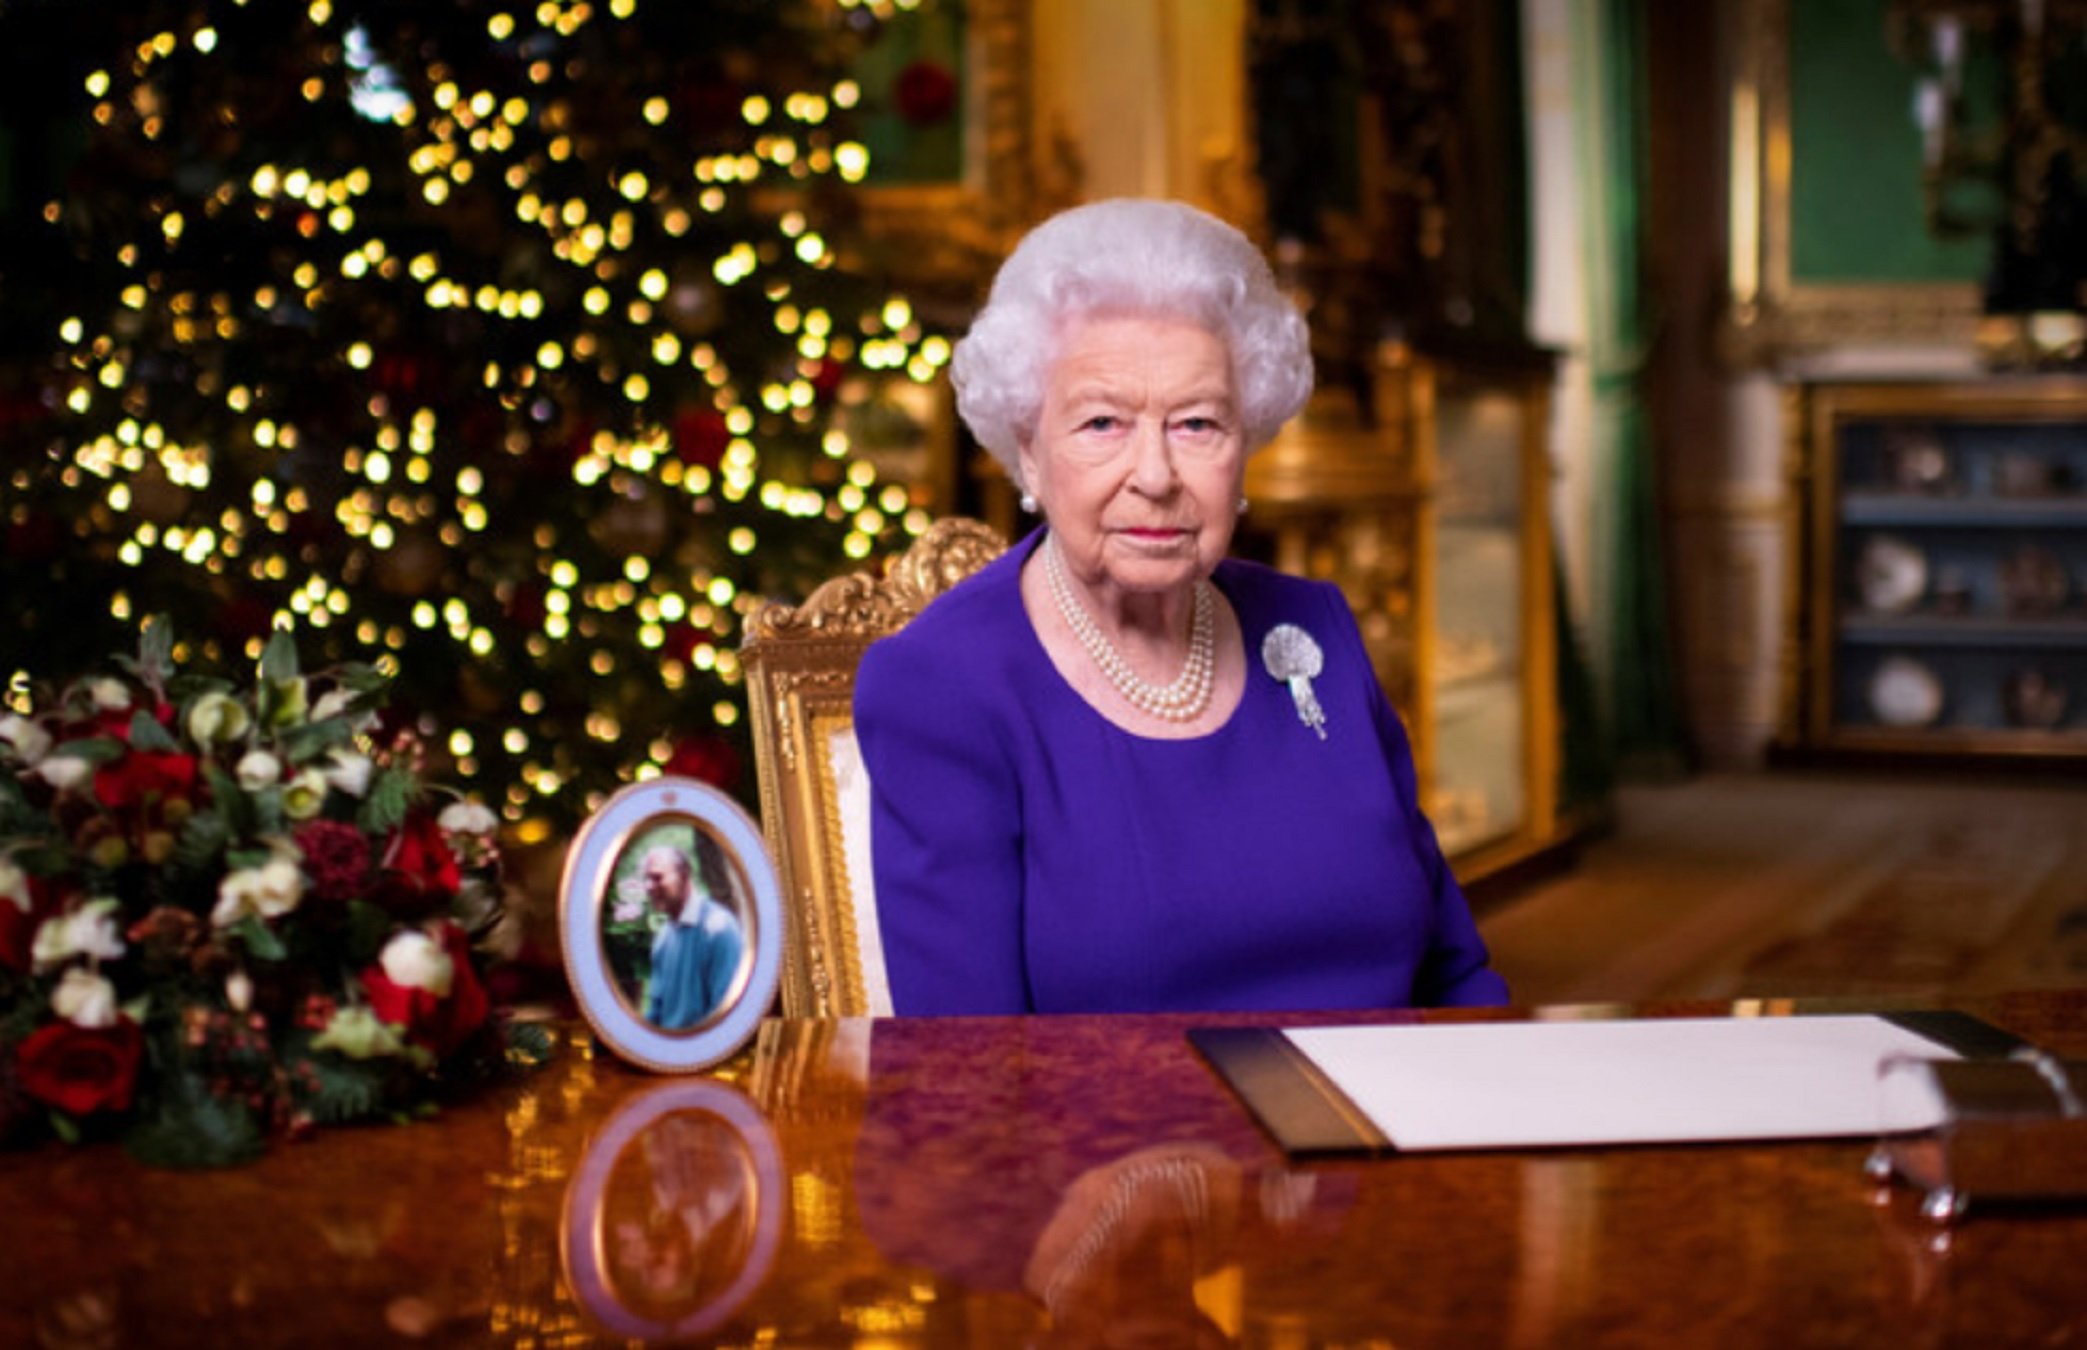 Isabel II en el mensaje de Navidad hunde a Felipe como un mediocre